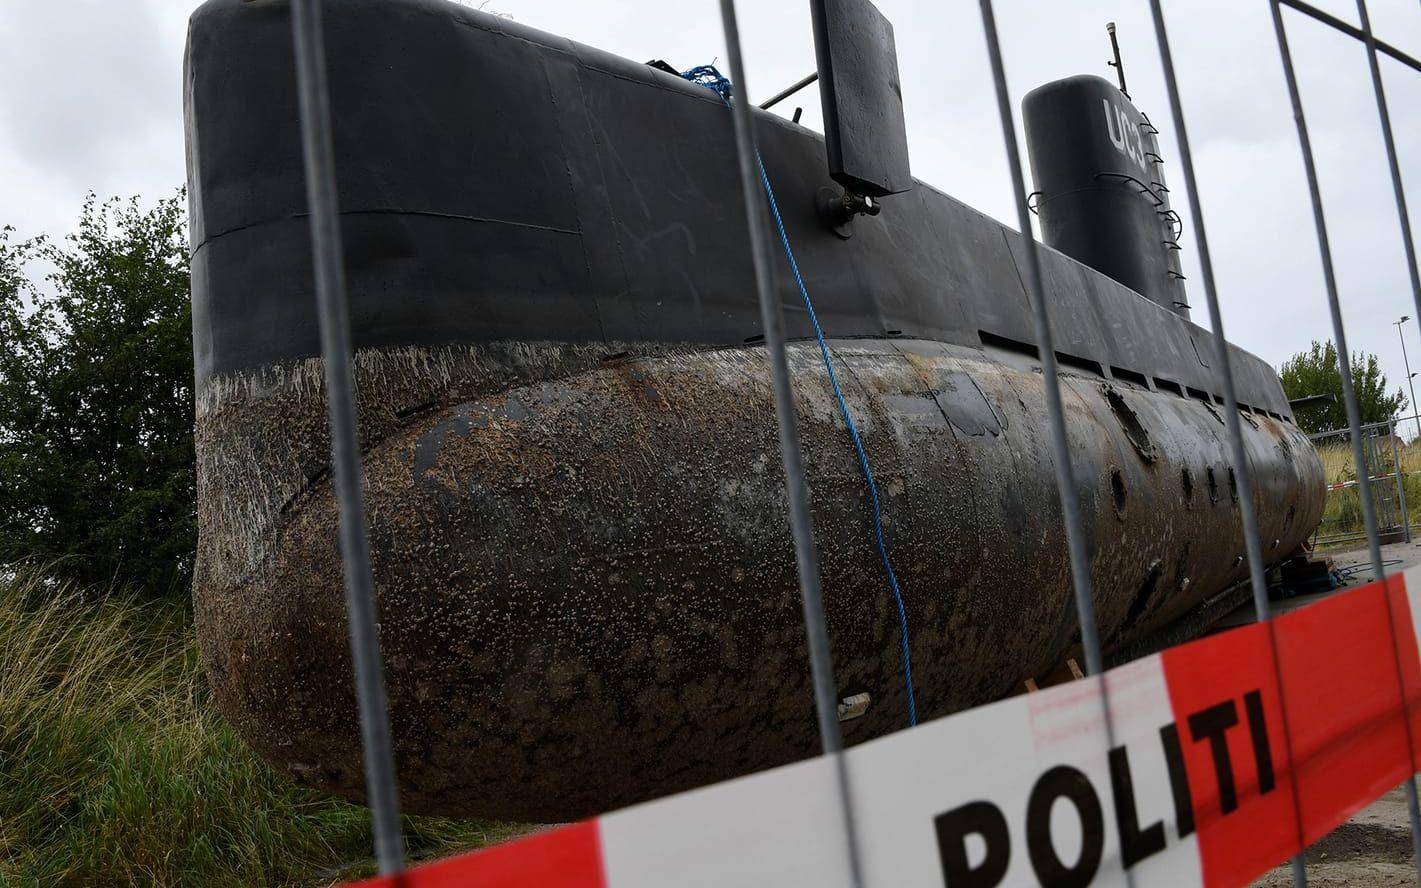 Drygt tre veckor har gått sedan journalisten Kim Wall lämnade Köpenhamn i uppfinnaren Peter Madsens ubåt. FOTO: TT
